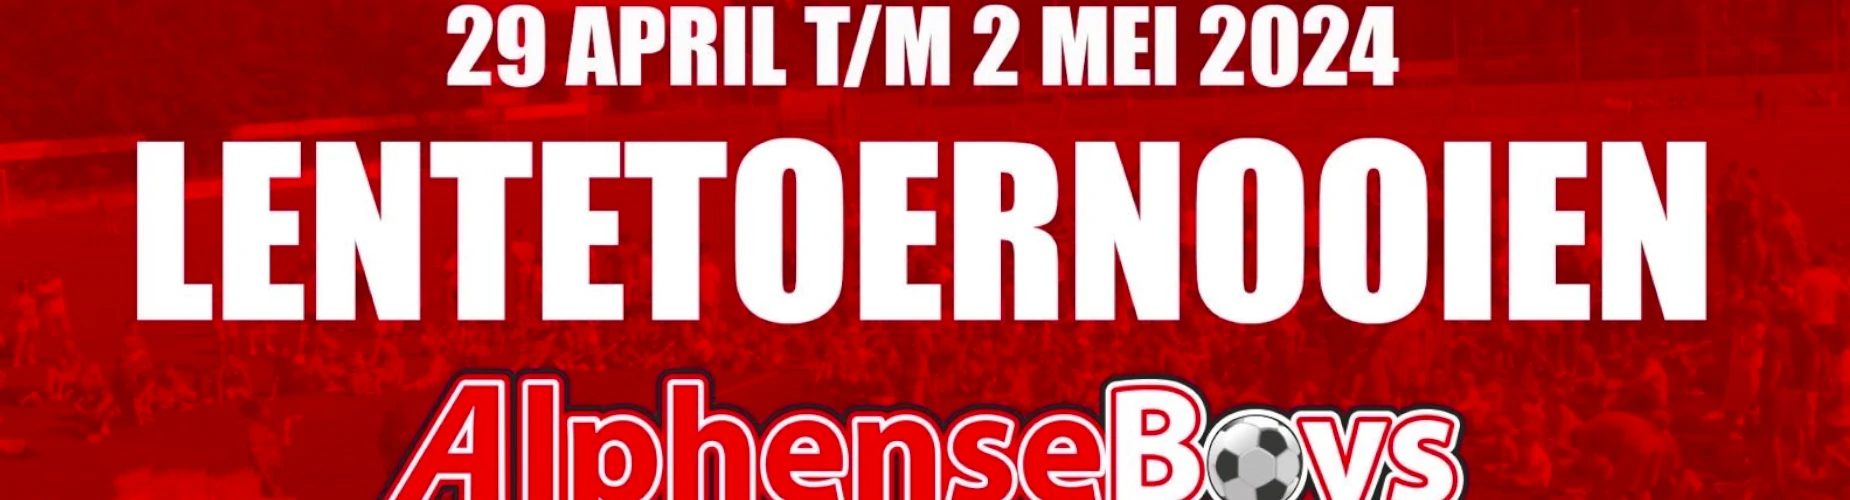 Banner - O11 - Lentetoernooi Alphense Boys - Alphense Boys - Alphen aan den Rijn